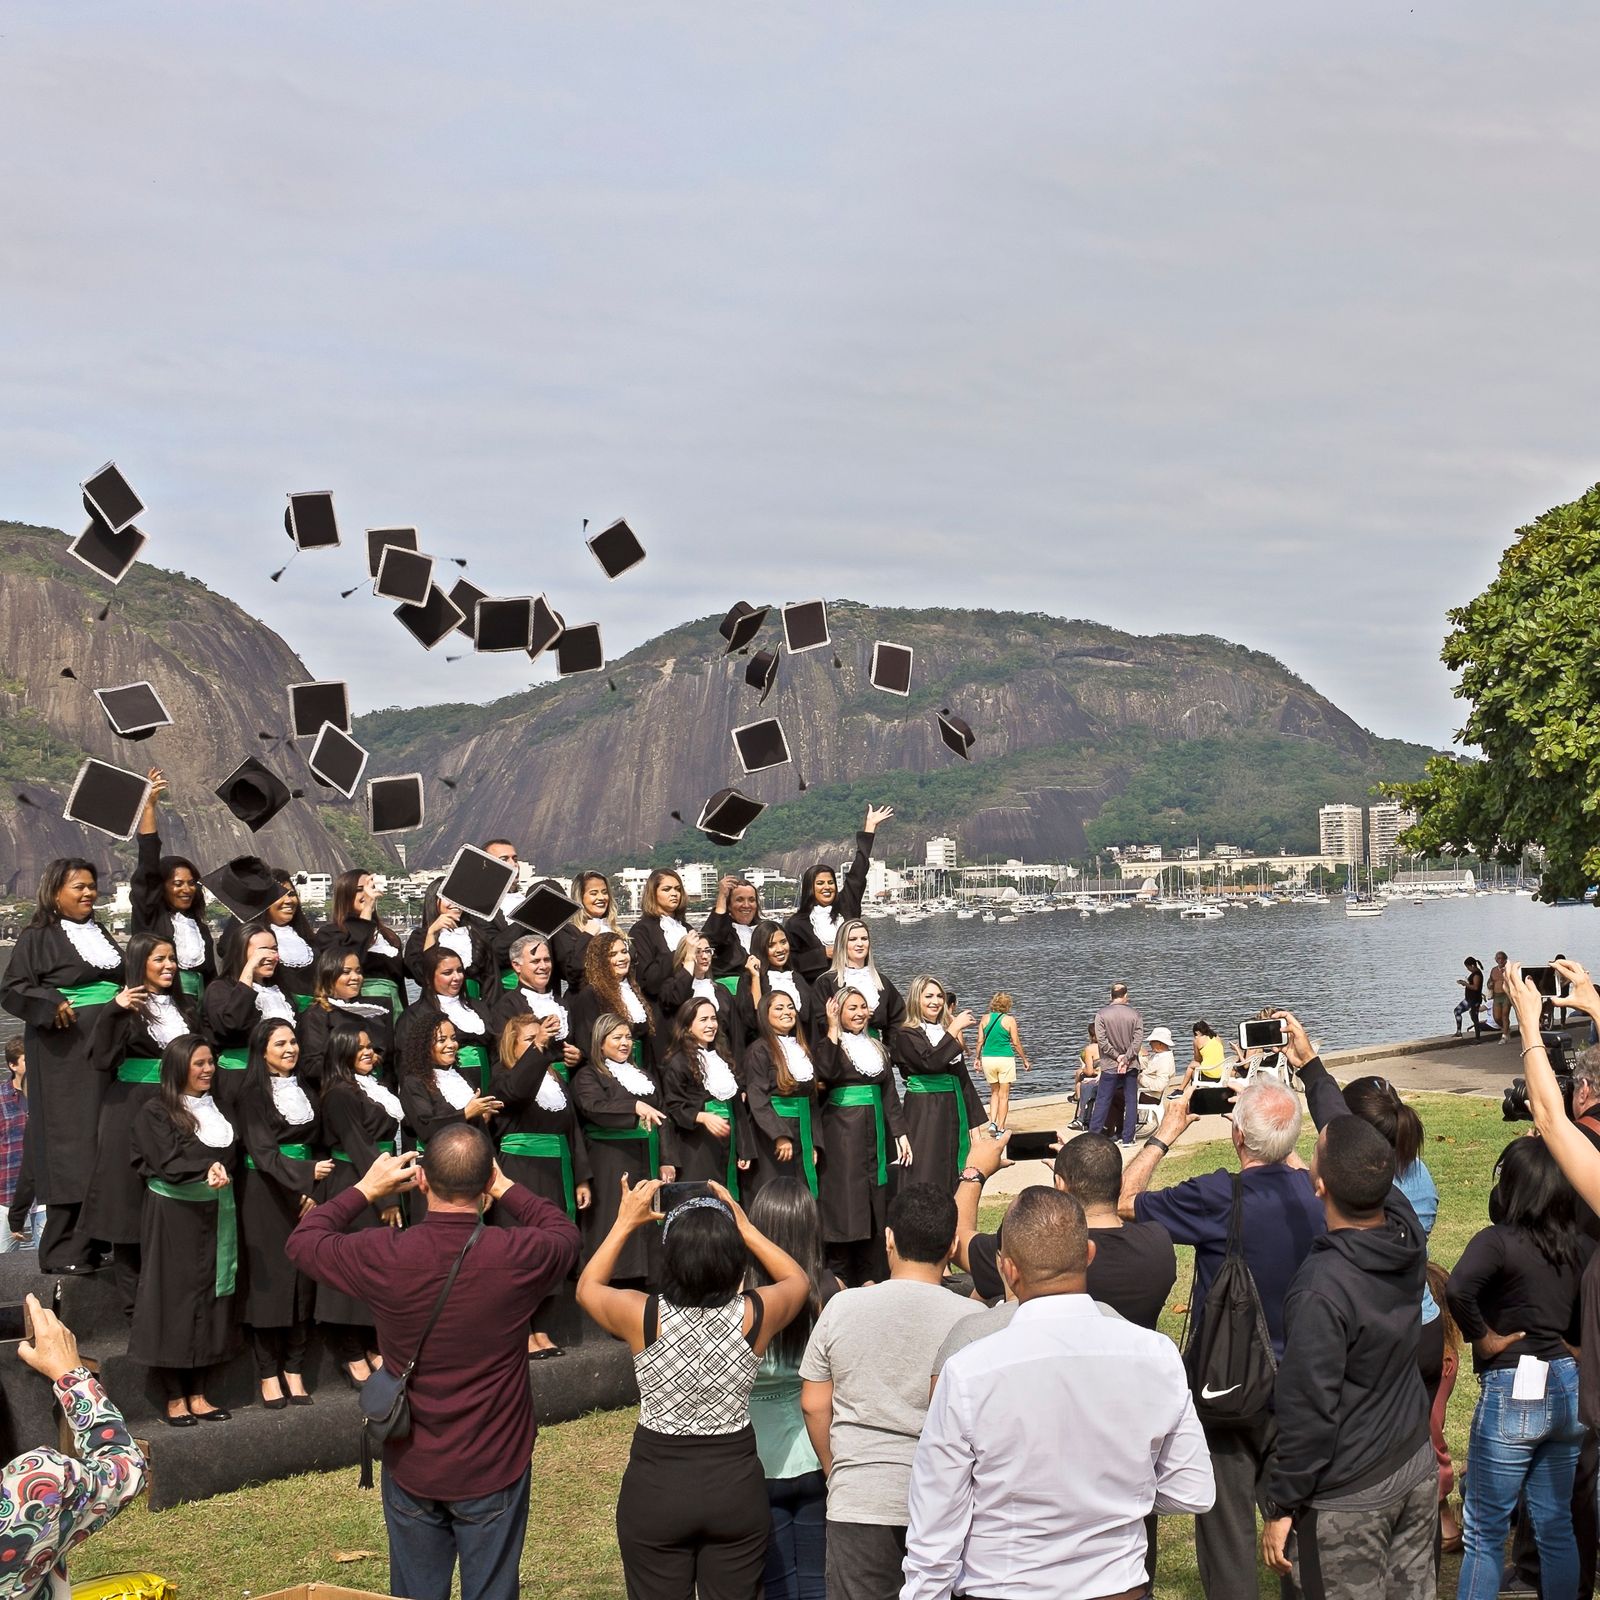 © Lara Ciarabellini - Rio de Janeiro (Brazil) – Graduation souvenir picture in front of the Sugar Loaf.